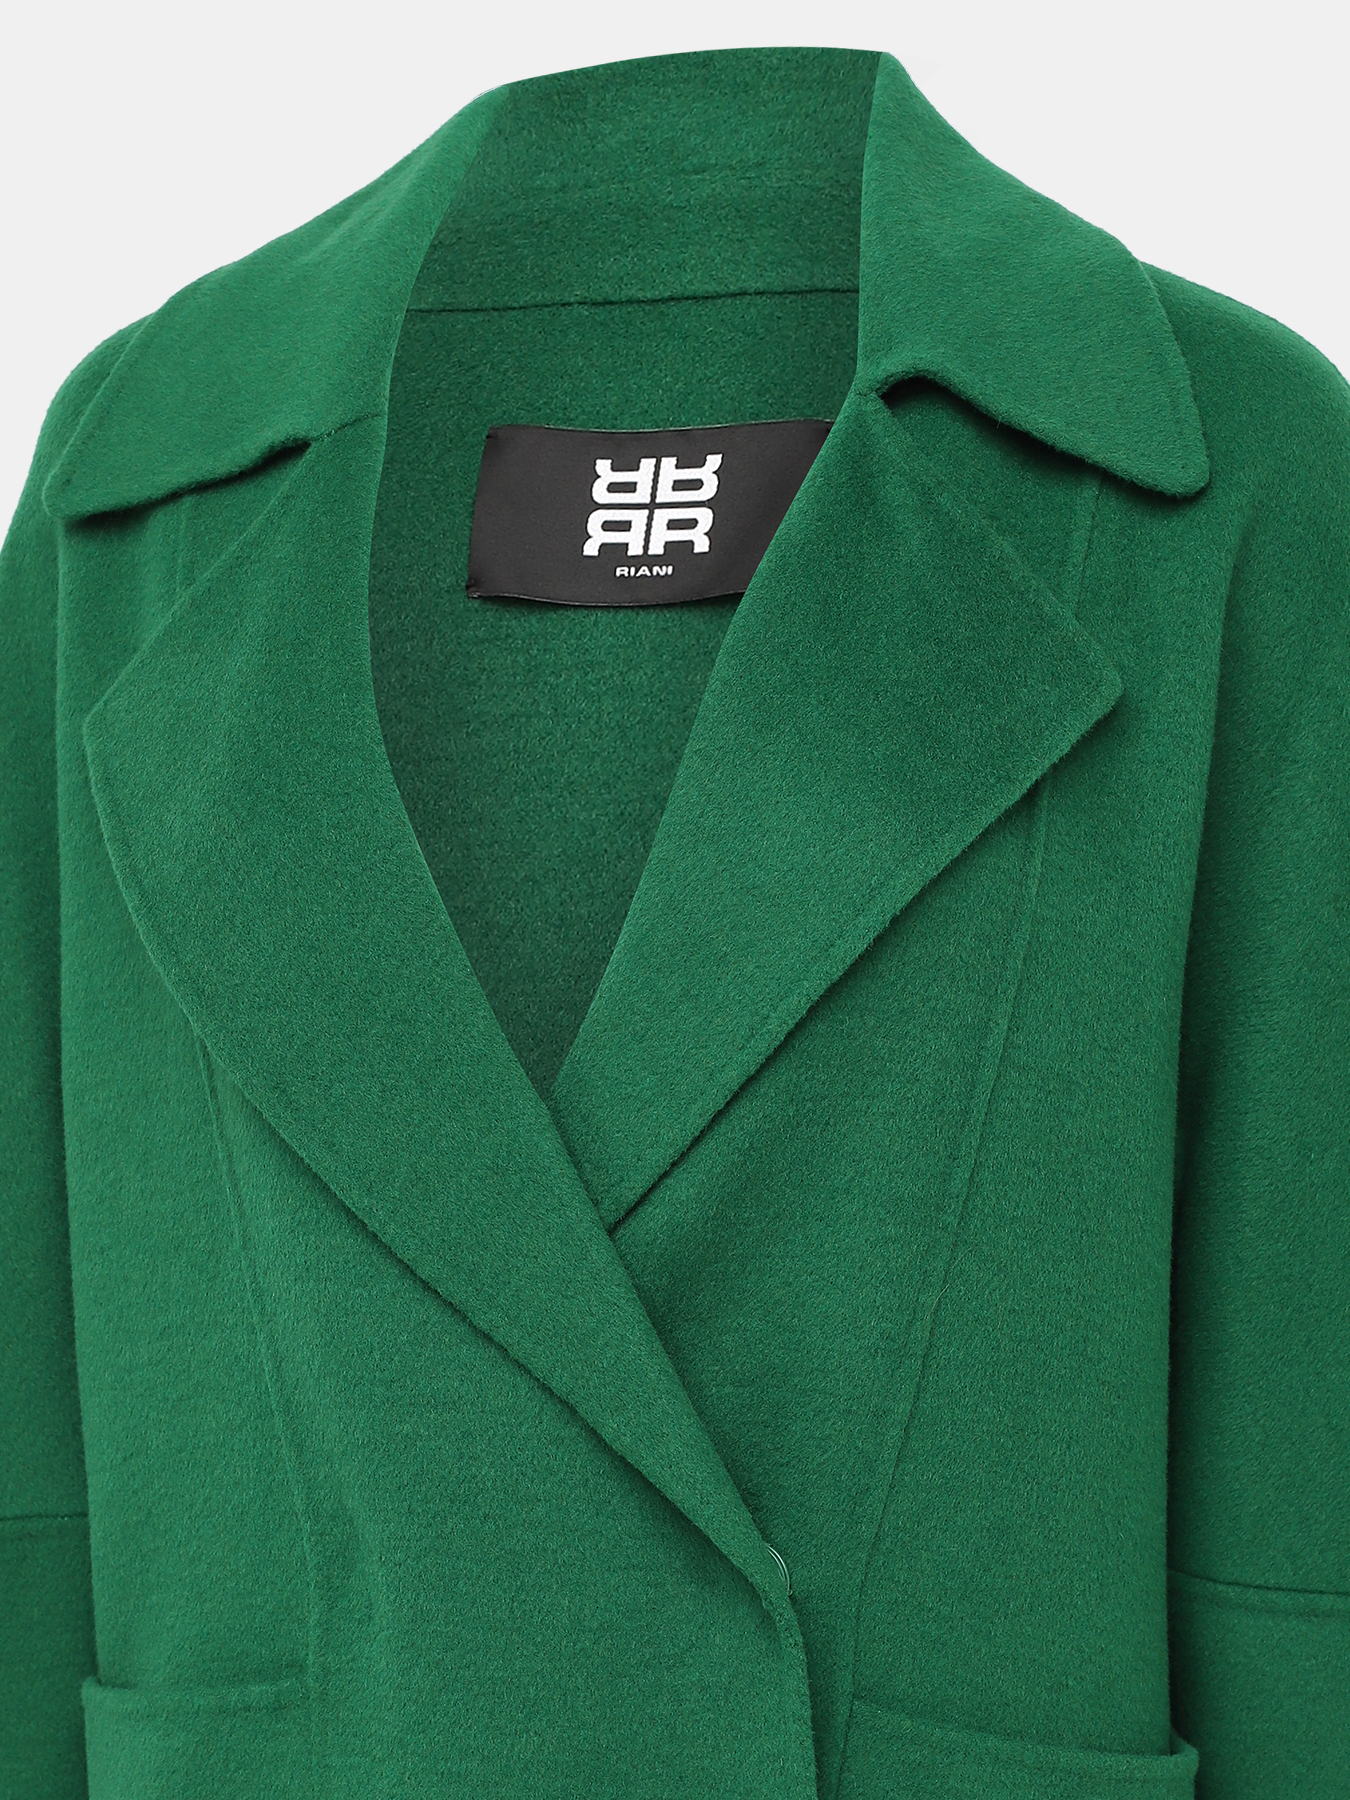 Пальто Riani 432414-018, цвет зеленый, размер 42 - фото 4